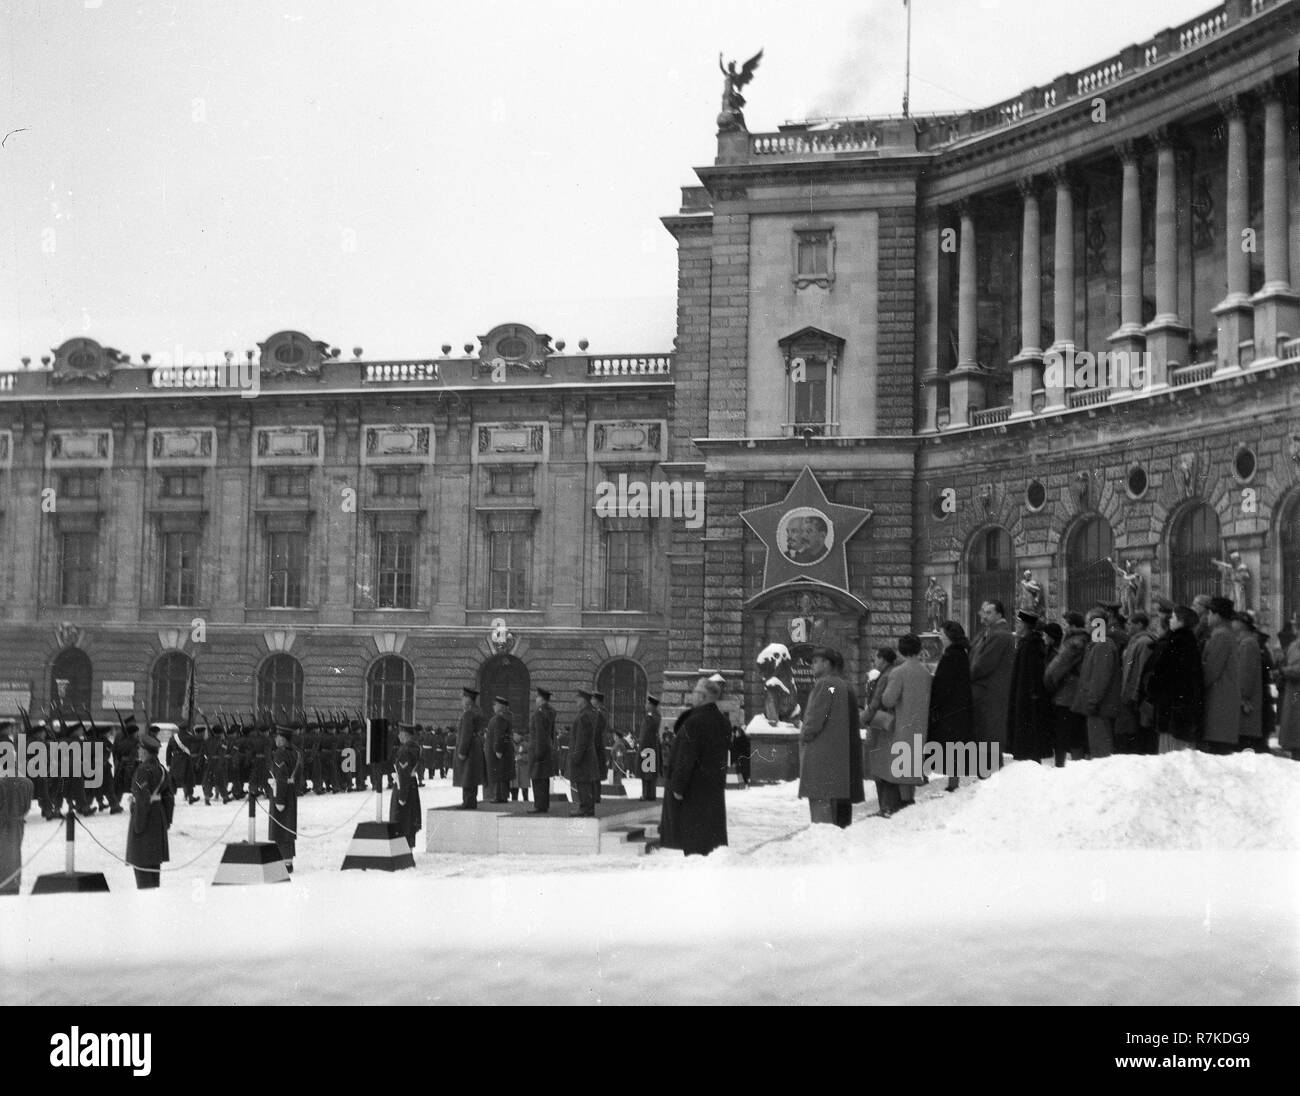 Vienne d'après-guerre pendant l'occupation alliée de la garde changhing mensuel à Vienne en Autriche au palais impérial Hofburg de Vienne Wien en 1947 Banque D'Images